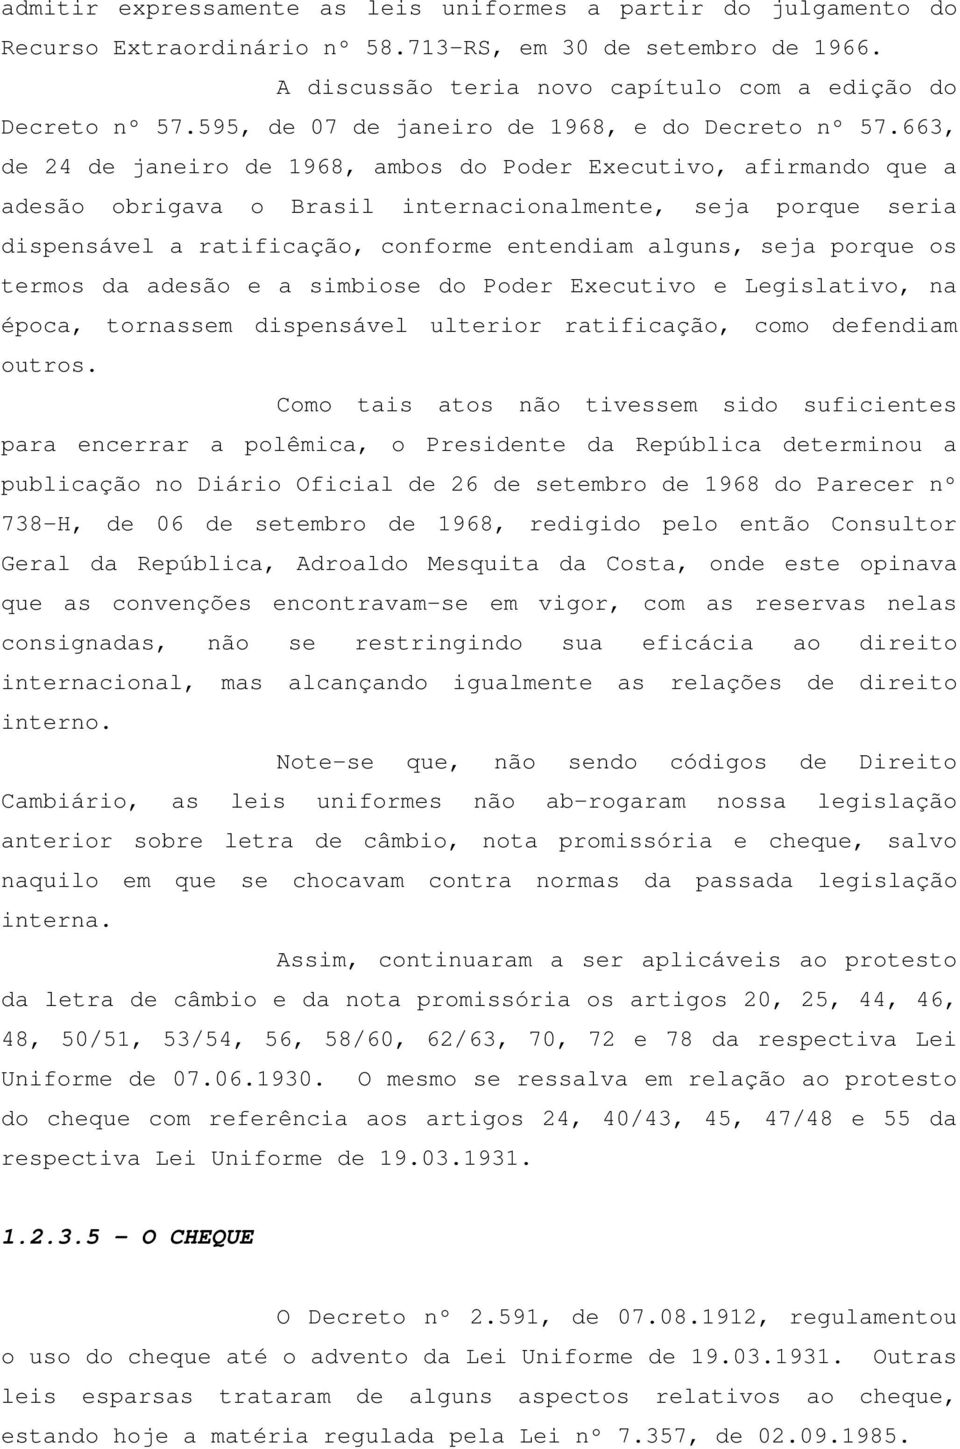 663, de 24 de janeiro de 1968, ambos do Poder Executivo, afirmando que a adesão obrigava o Brasil internacionalmente, seja porque seria dispensável a ratificação, conforme entendiam alguns, seja